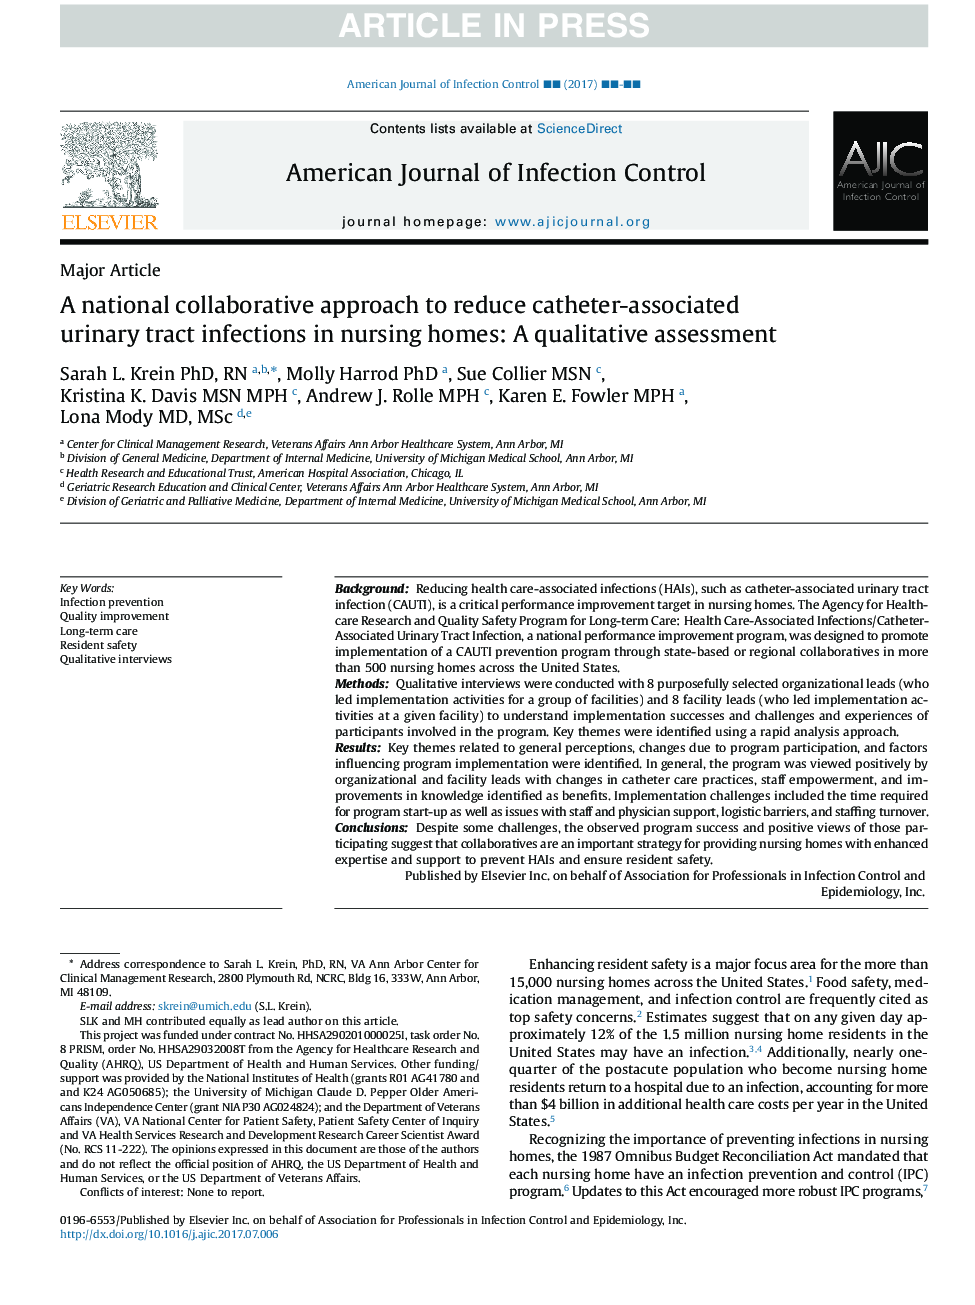 یک رویکرد همکاری ملی برای کاهش عفونت های دستگاه ادراری وابسته به کاتتر در خانه های سالمندان: یک ارزیابی کیفی 